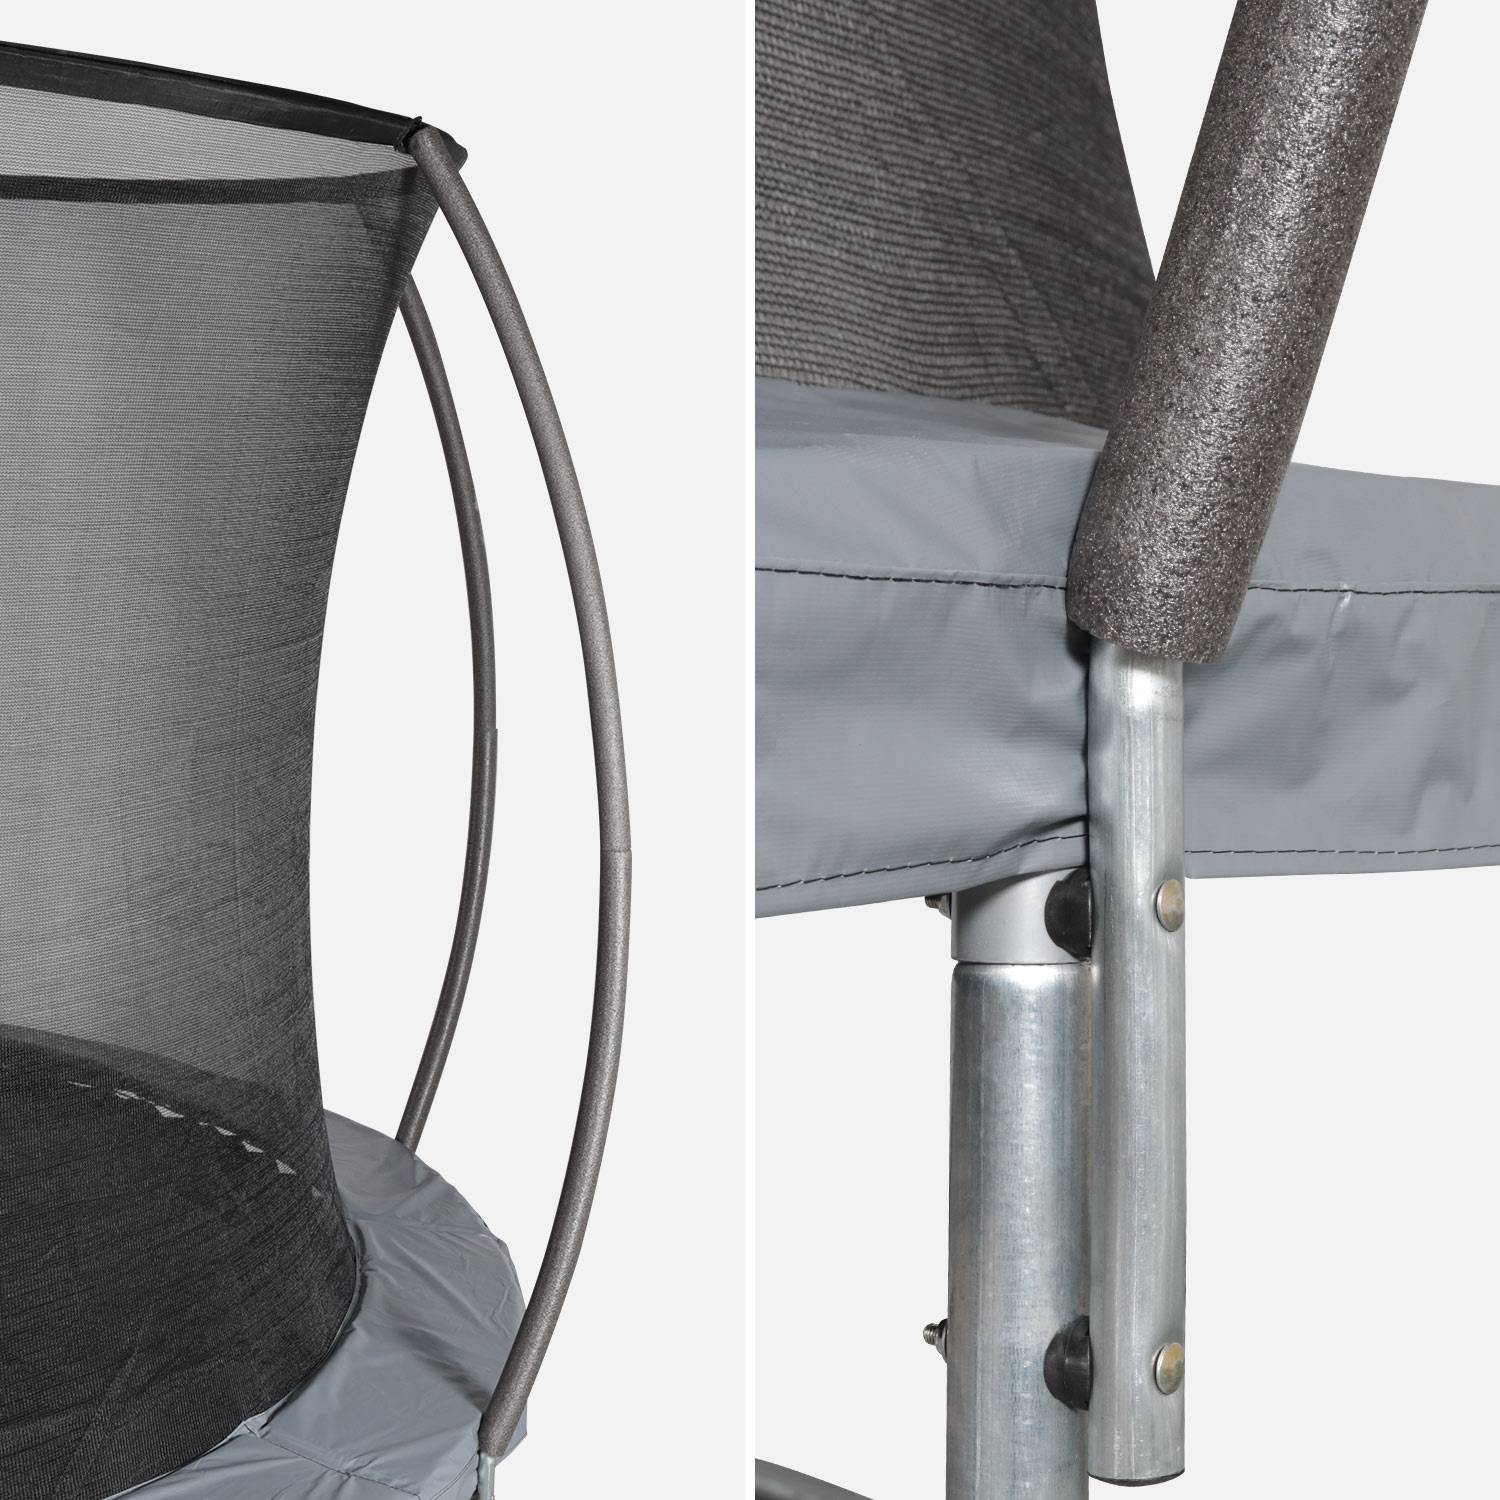 Cama elástica redonda 305 cm gris con red de seguridad interna - Mars INNER - Nuevo modelo - cama elástica de jardín 3,05 m 305 cm | Calidad PRO. | Normas de la UE. Photo2